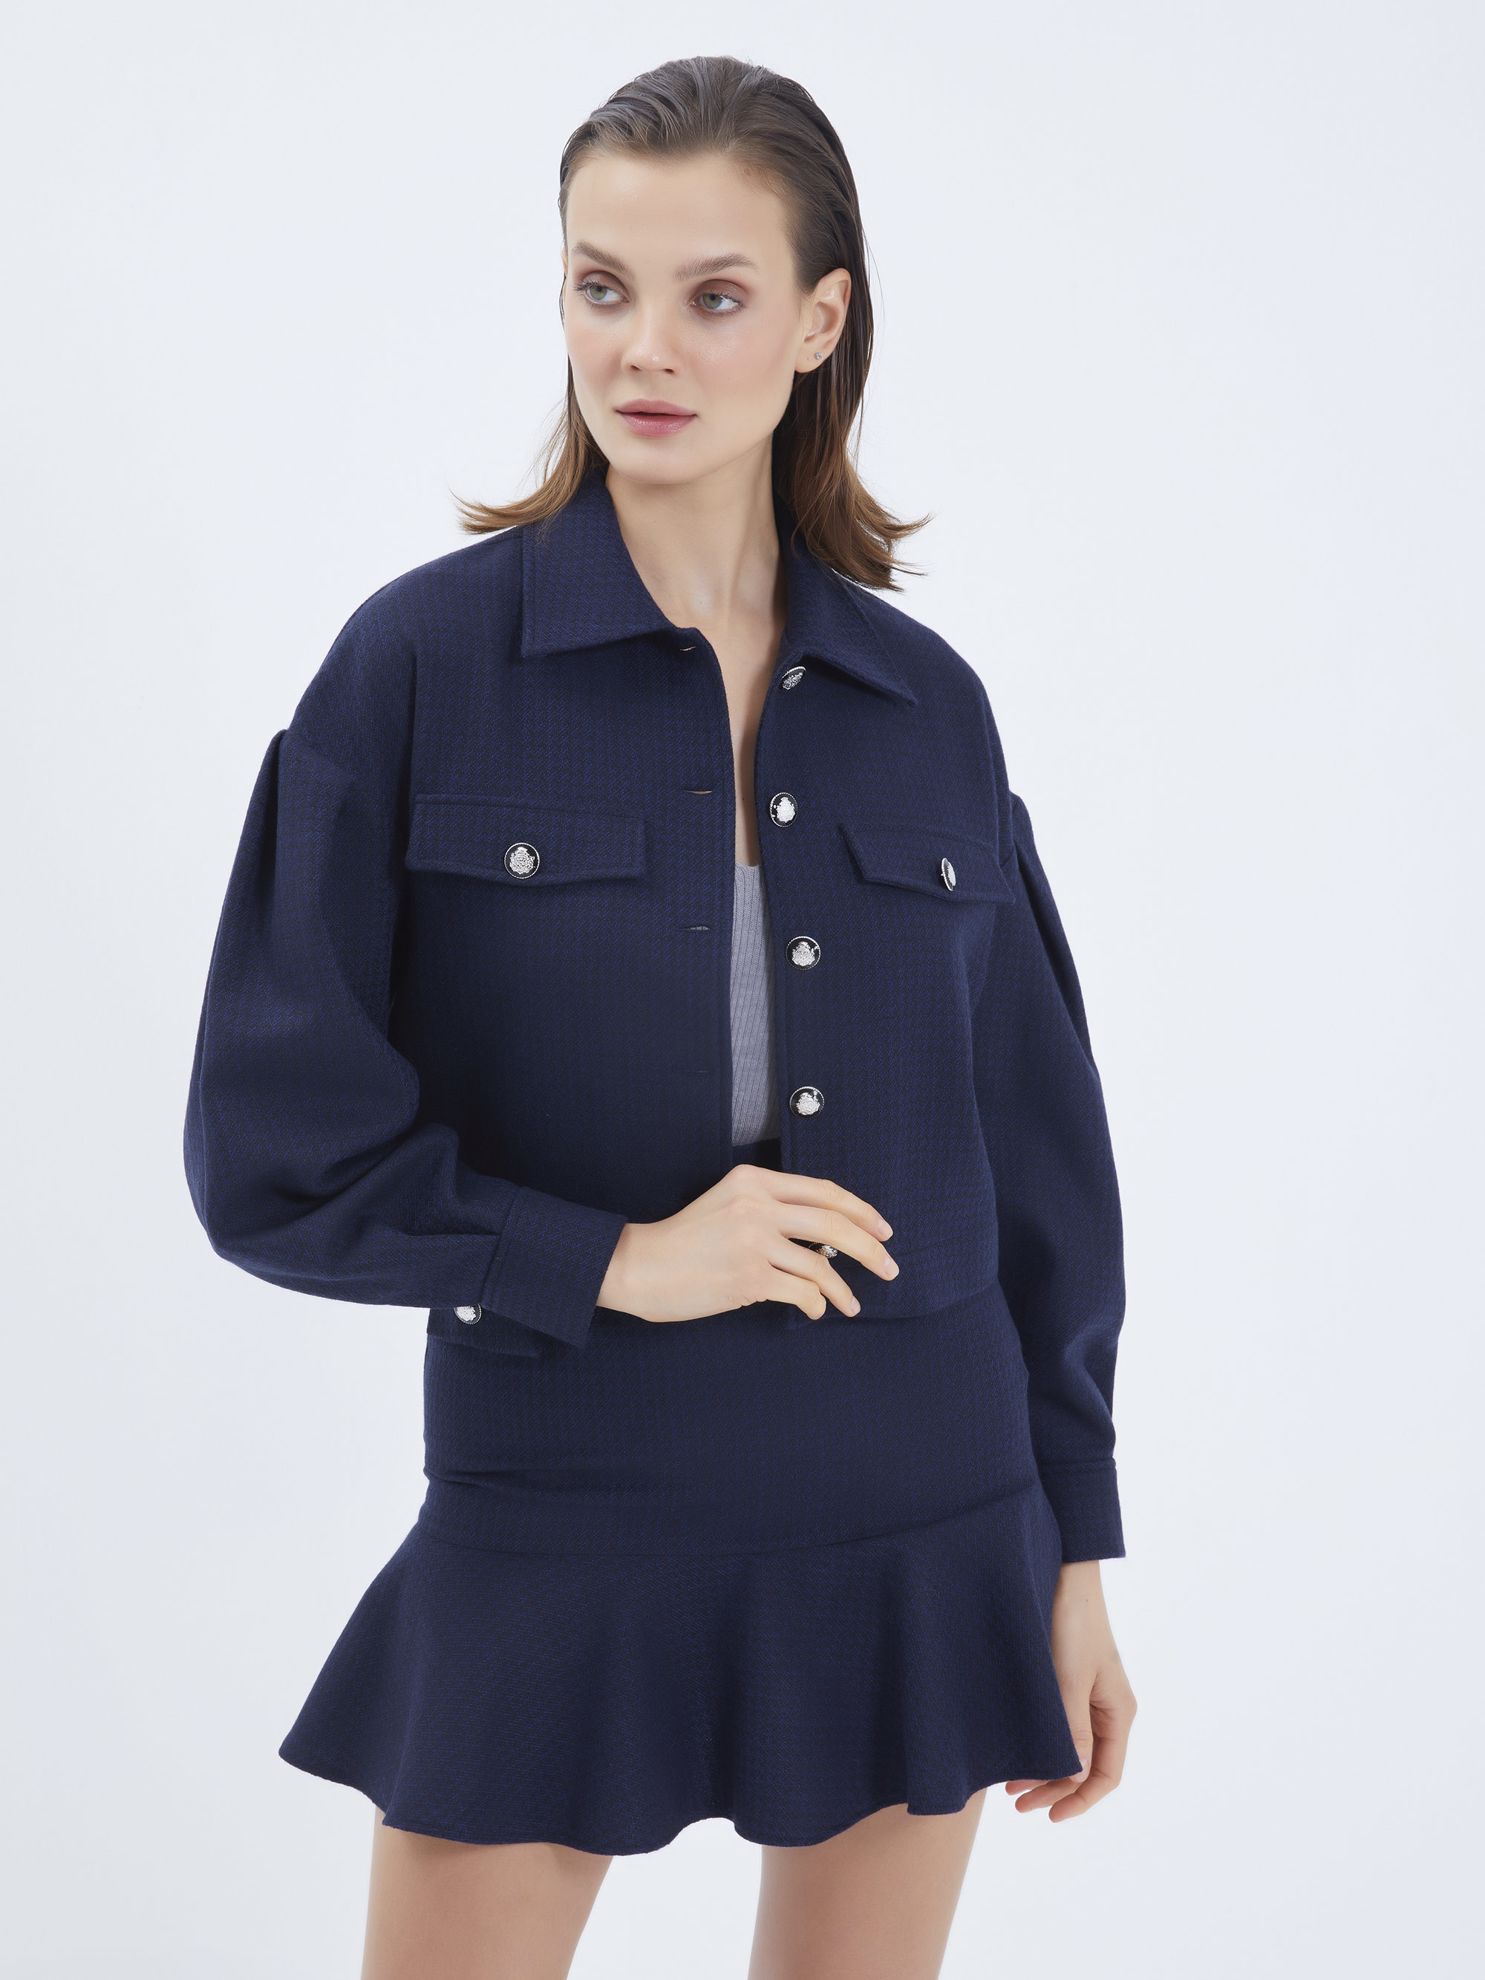 Karaca Kadın Ceket-Lacivert. ürün görseli